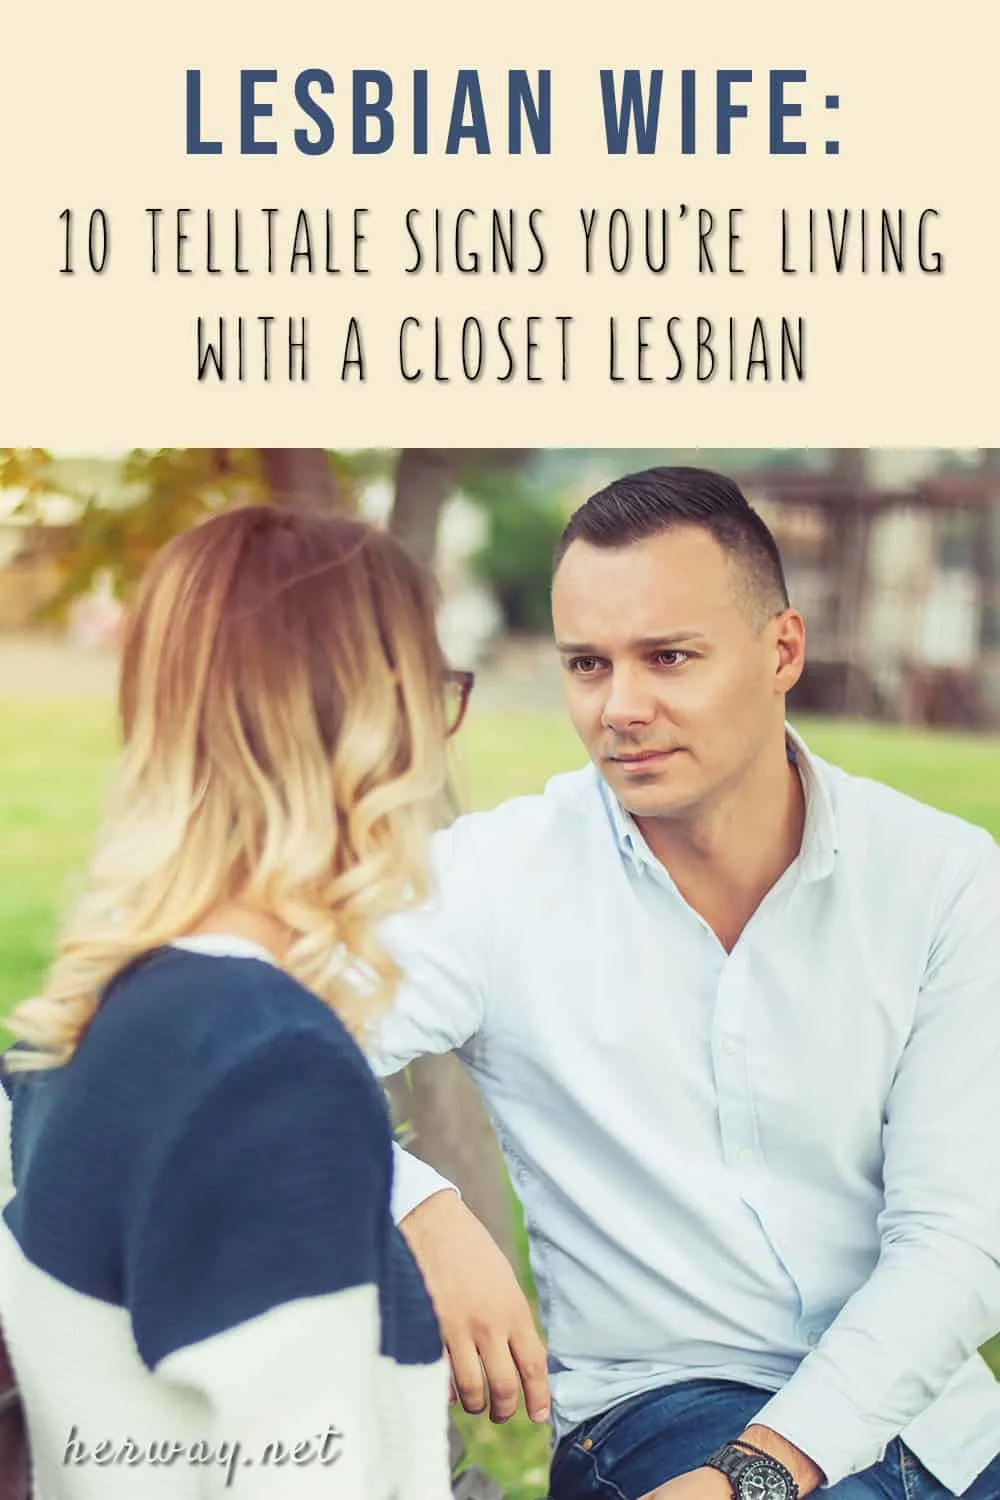 Lesbian affair has wife Dear Abby: